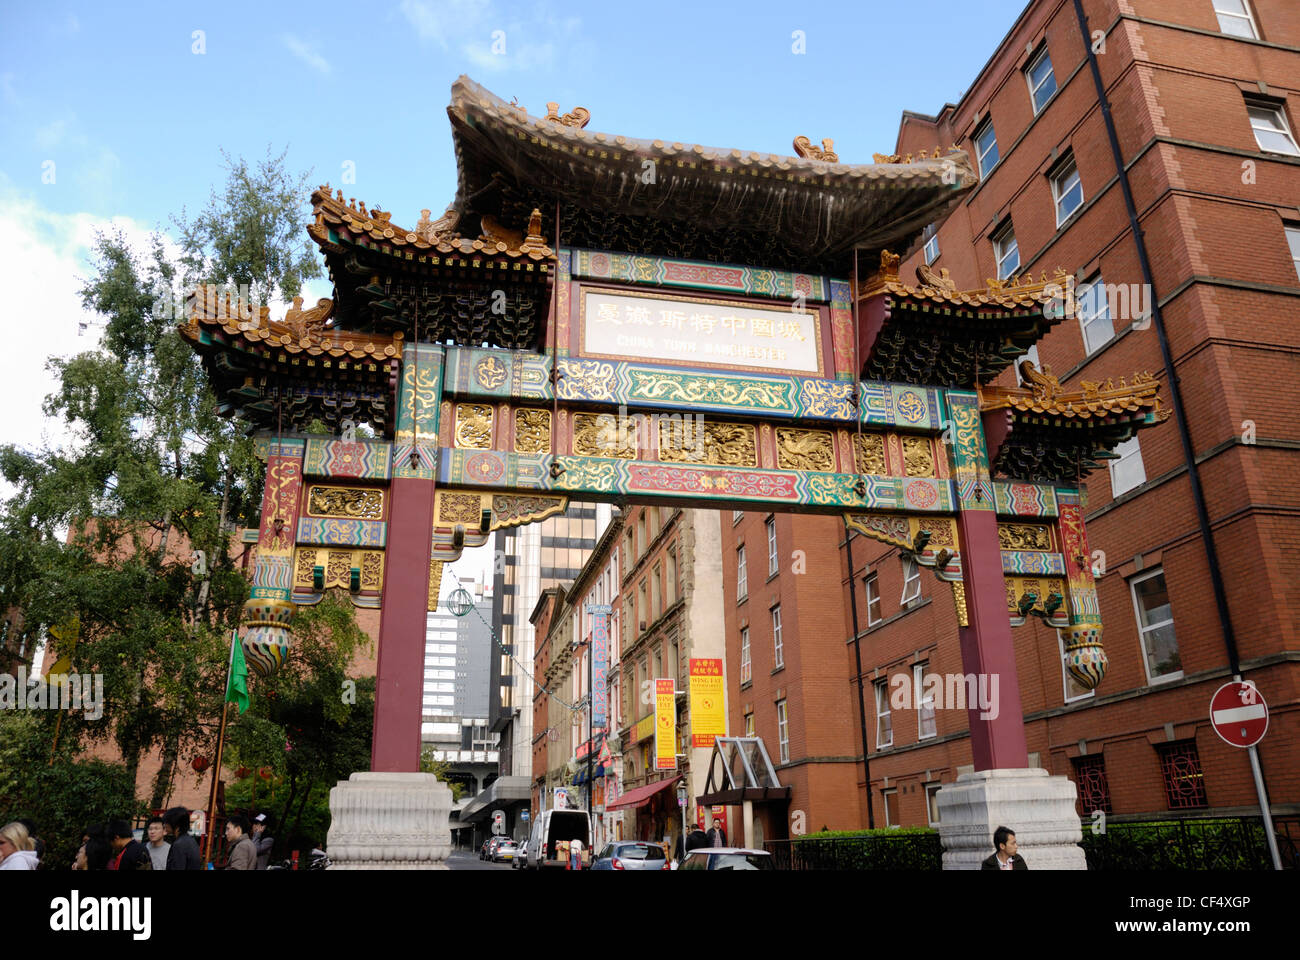 El arco imperial chino en Chinatown, en Manchester, pintado de rojo y oro y adornados con dragones y fénix muy, colores y Foto de stock